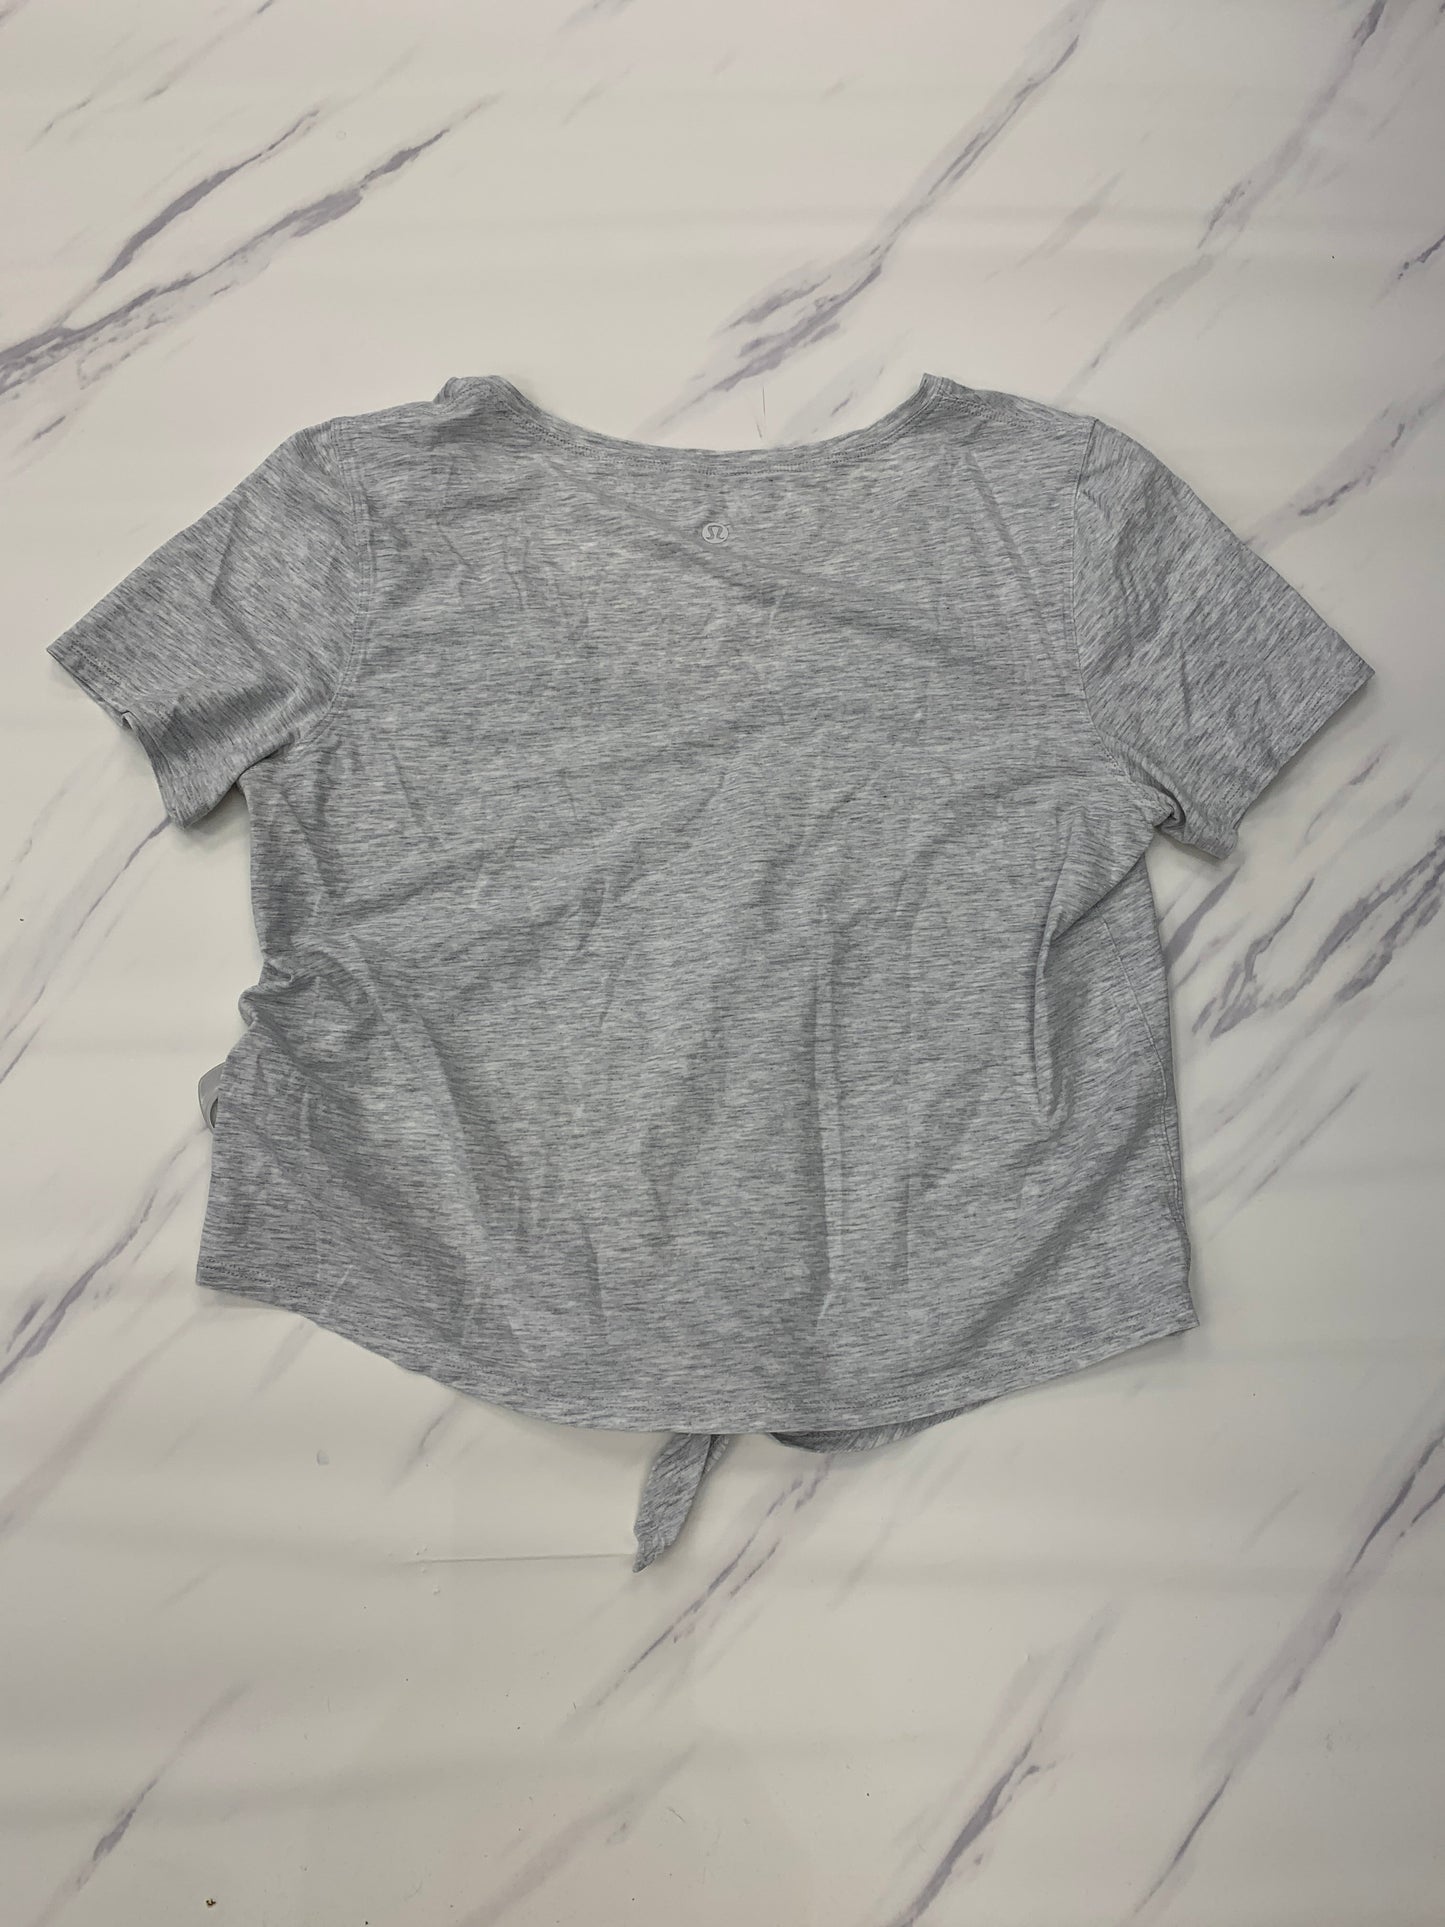 Grey Athletic Top Short Sleeve Lululemon, Size 6